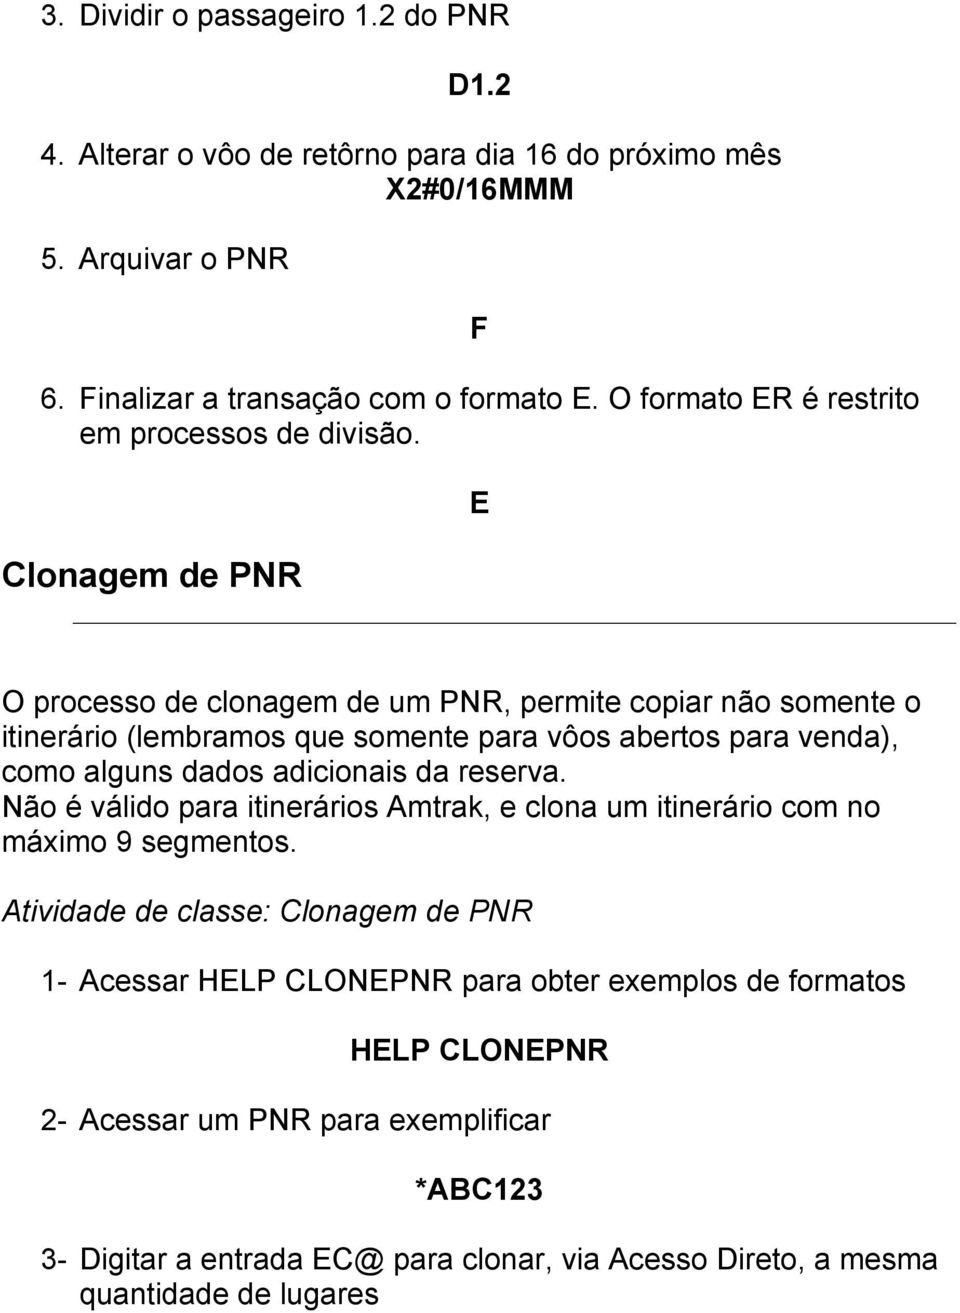 E Clonagem de PNR O processo de clonagem de um PNR, permite copiar não somente o itinerário (lembramos que somente para vôos abertos para venda), como alguns dados adicionais da